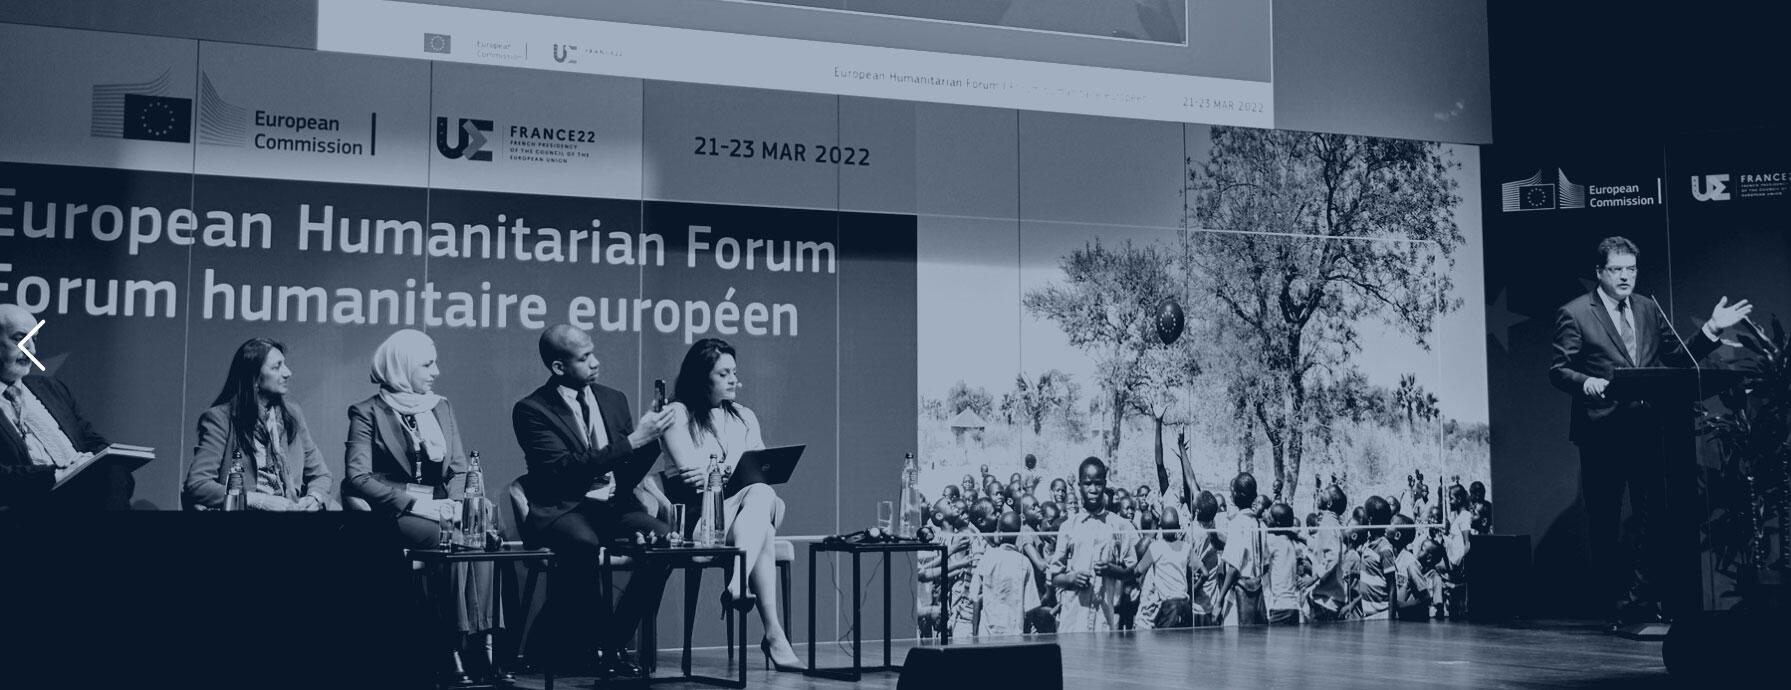 Image from 2022 European Humanitarian Forum